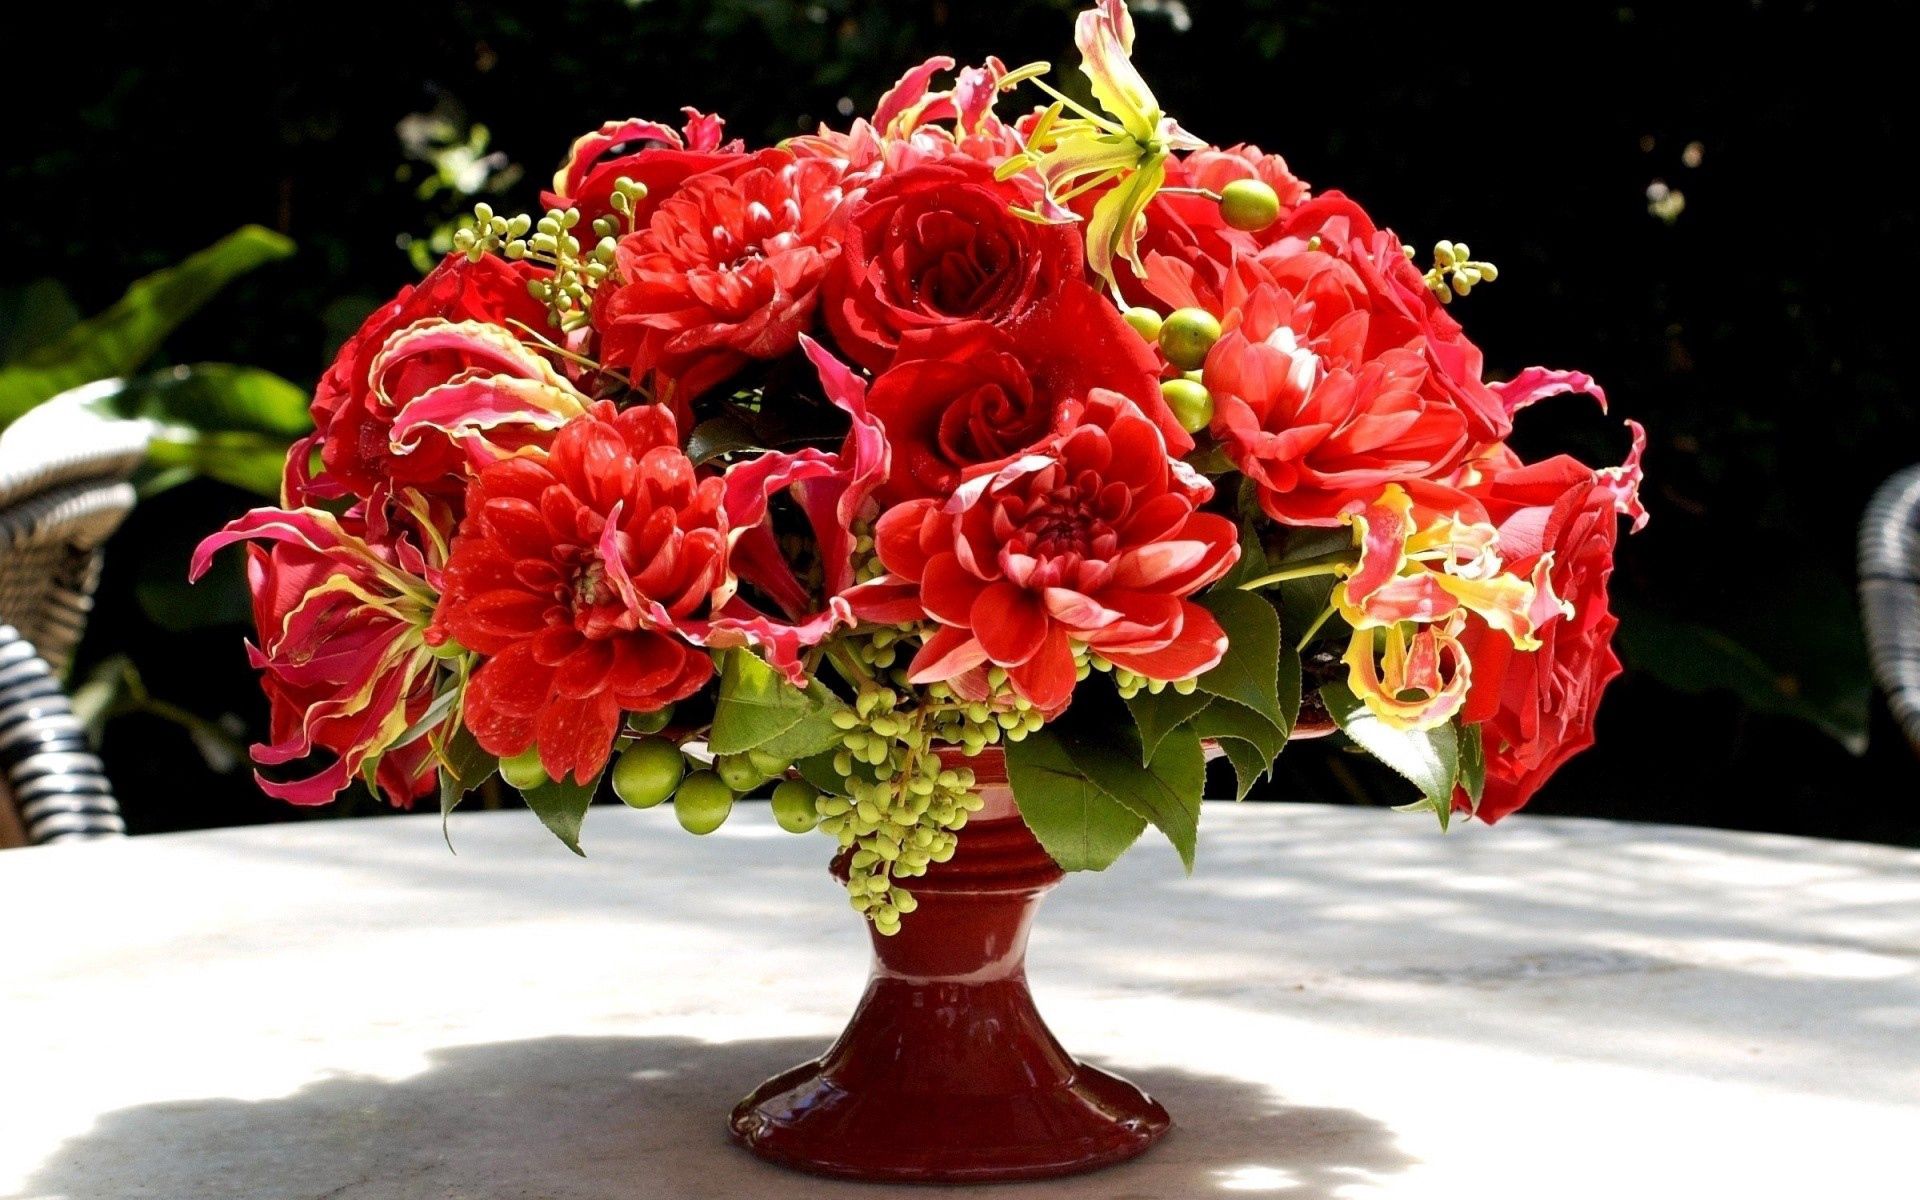 Download PC Wallpaper miscellaneous, miscellanea, flowers, bouquet, vase